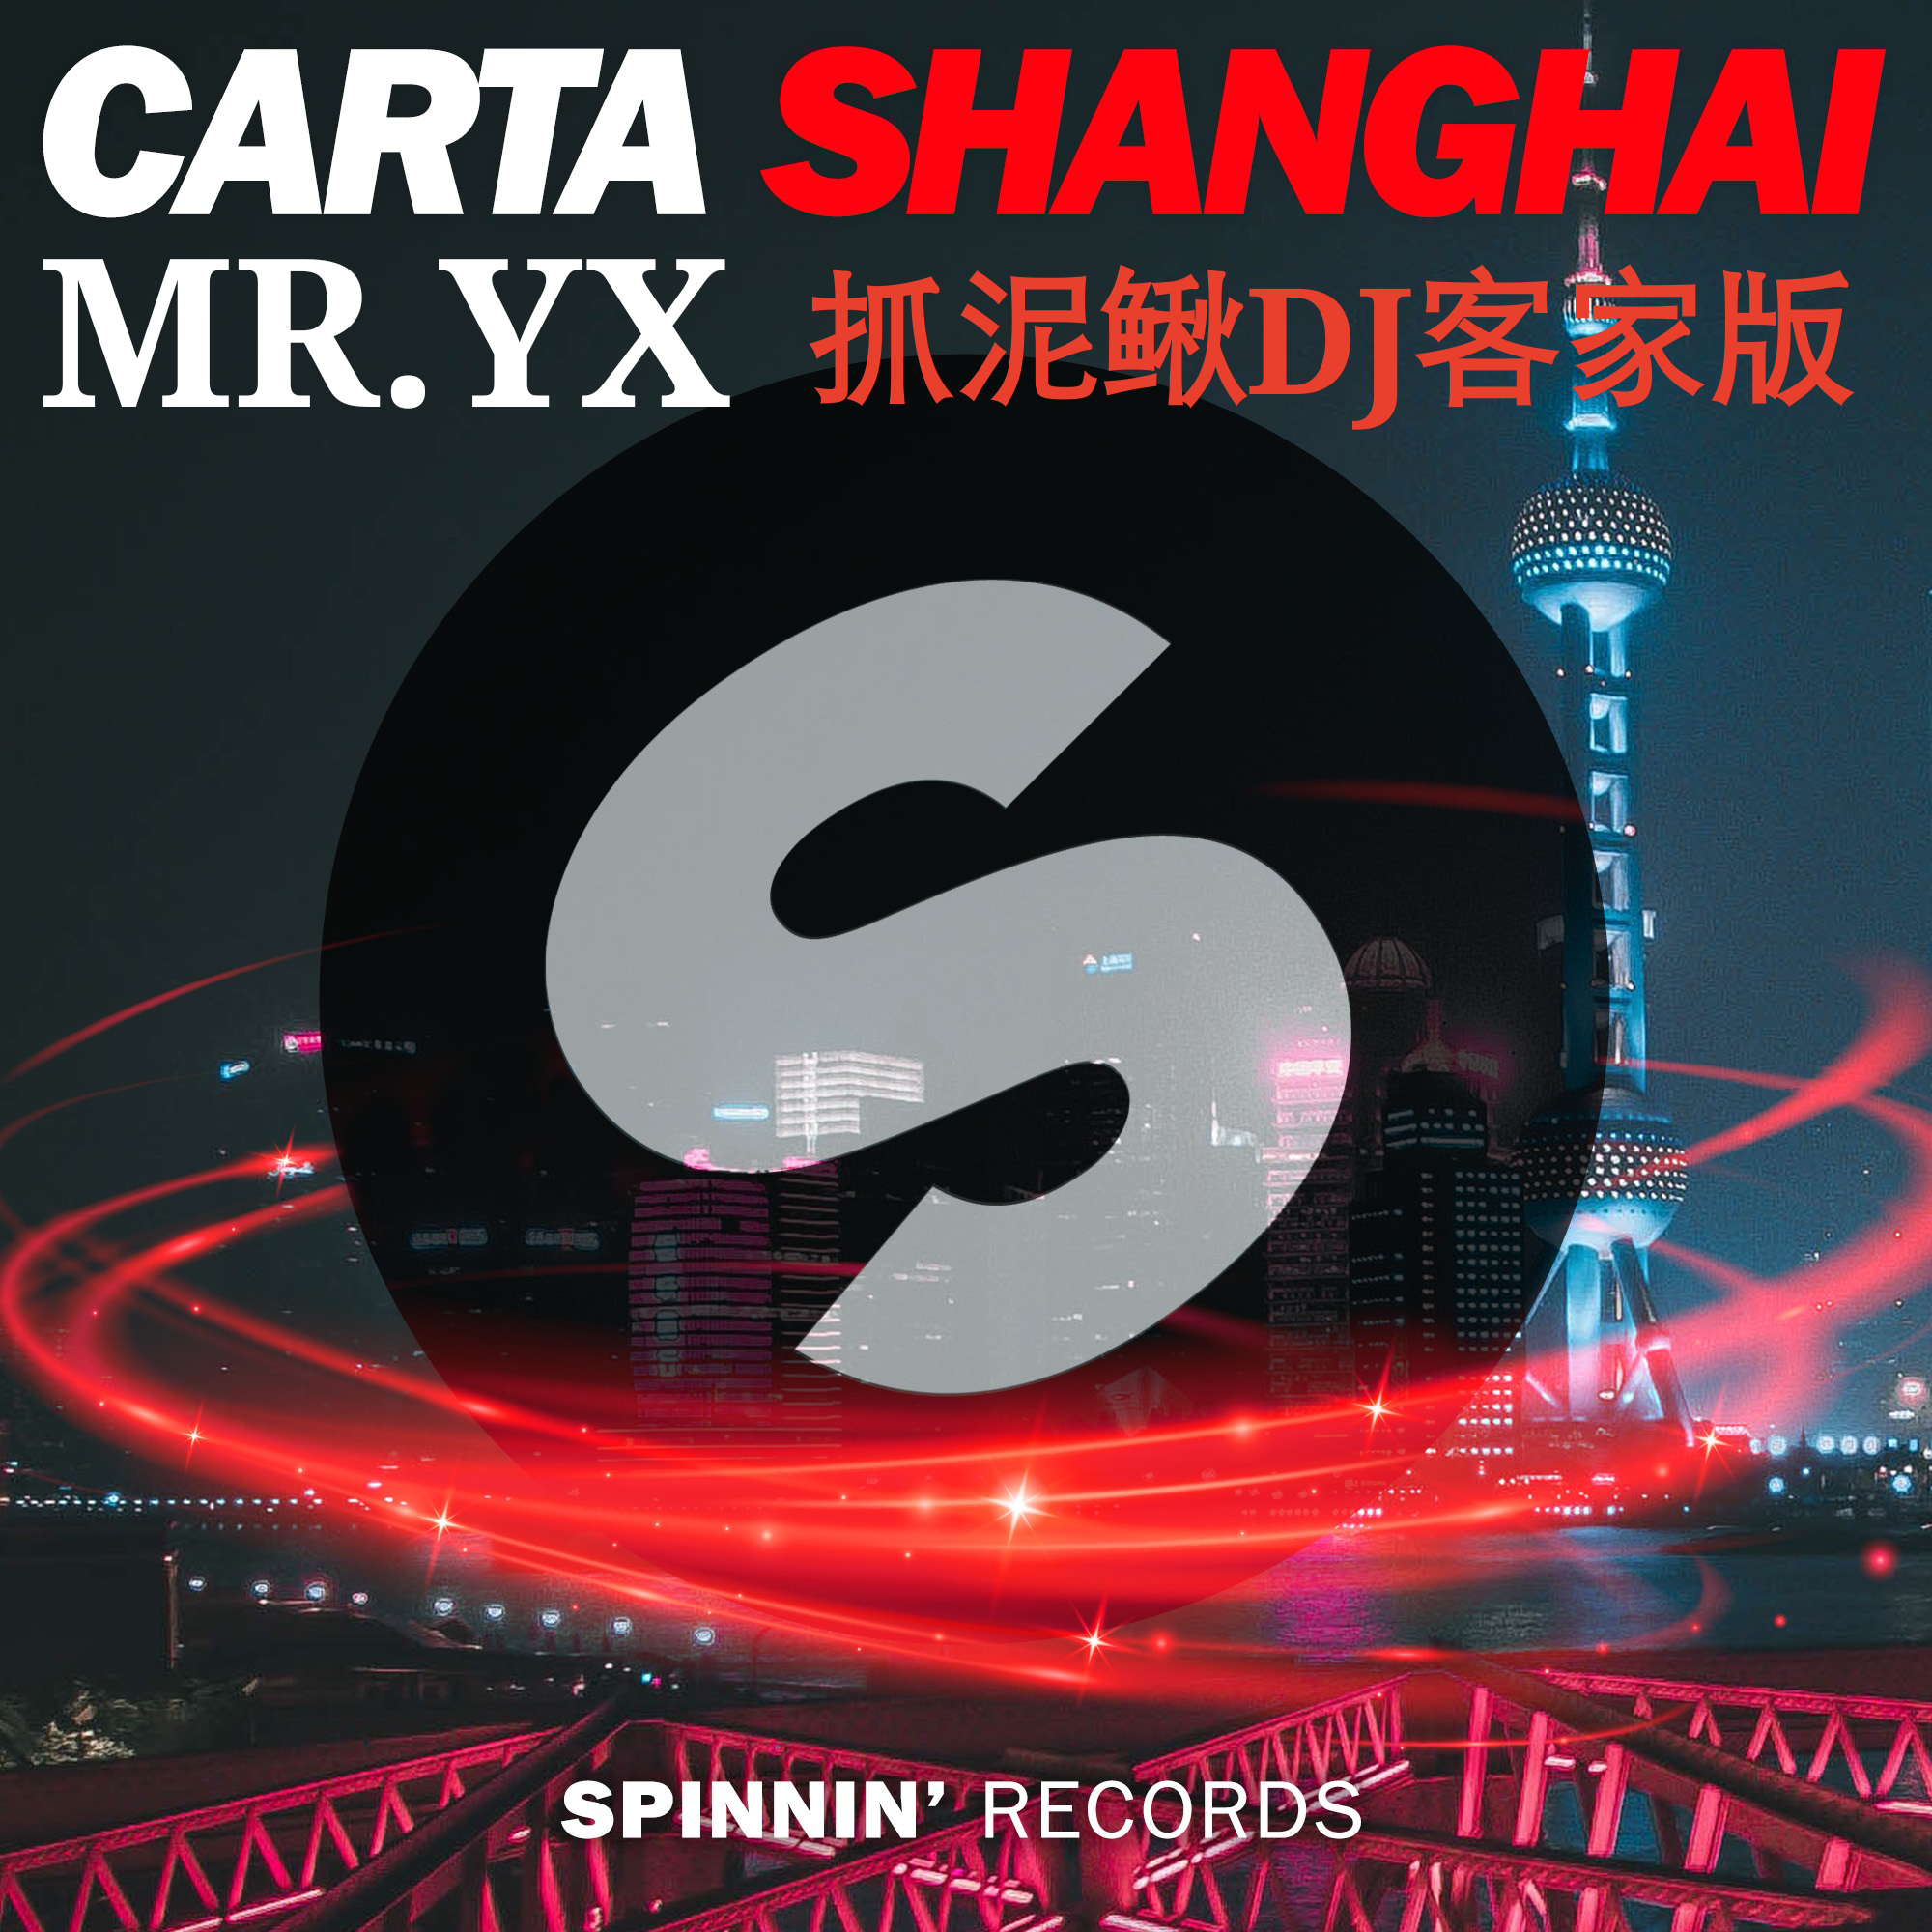 Shanghai Mr. YX zhua ni qiu DJ ke jia ban Mashup